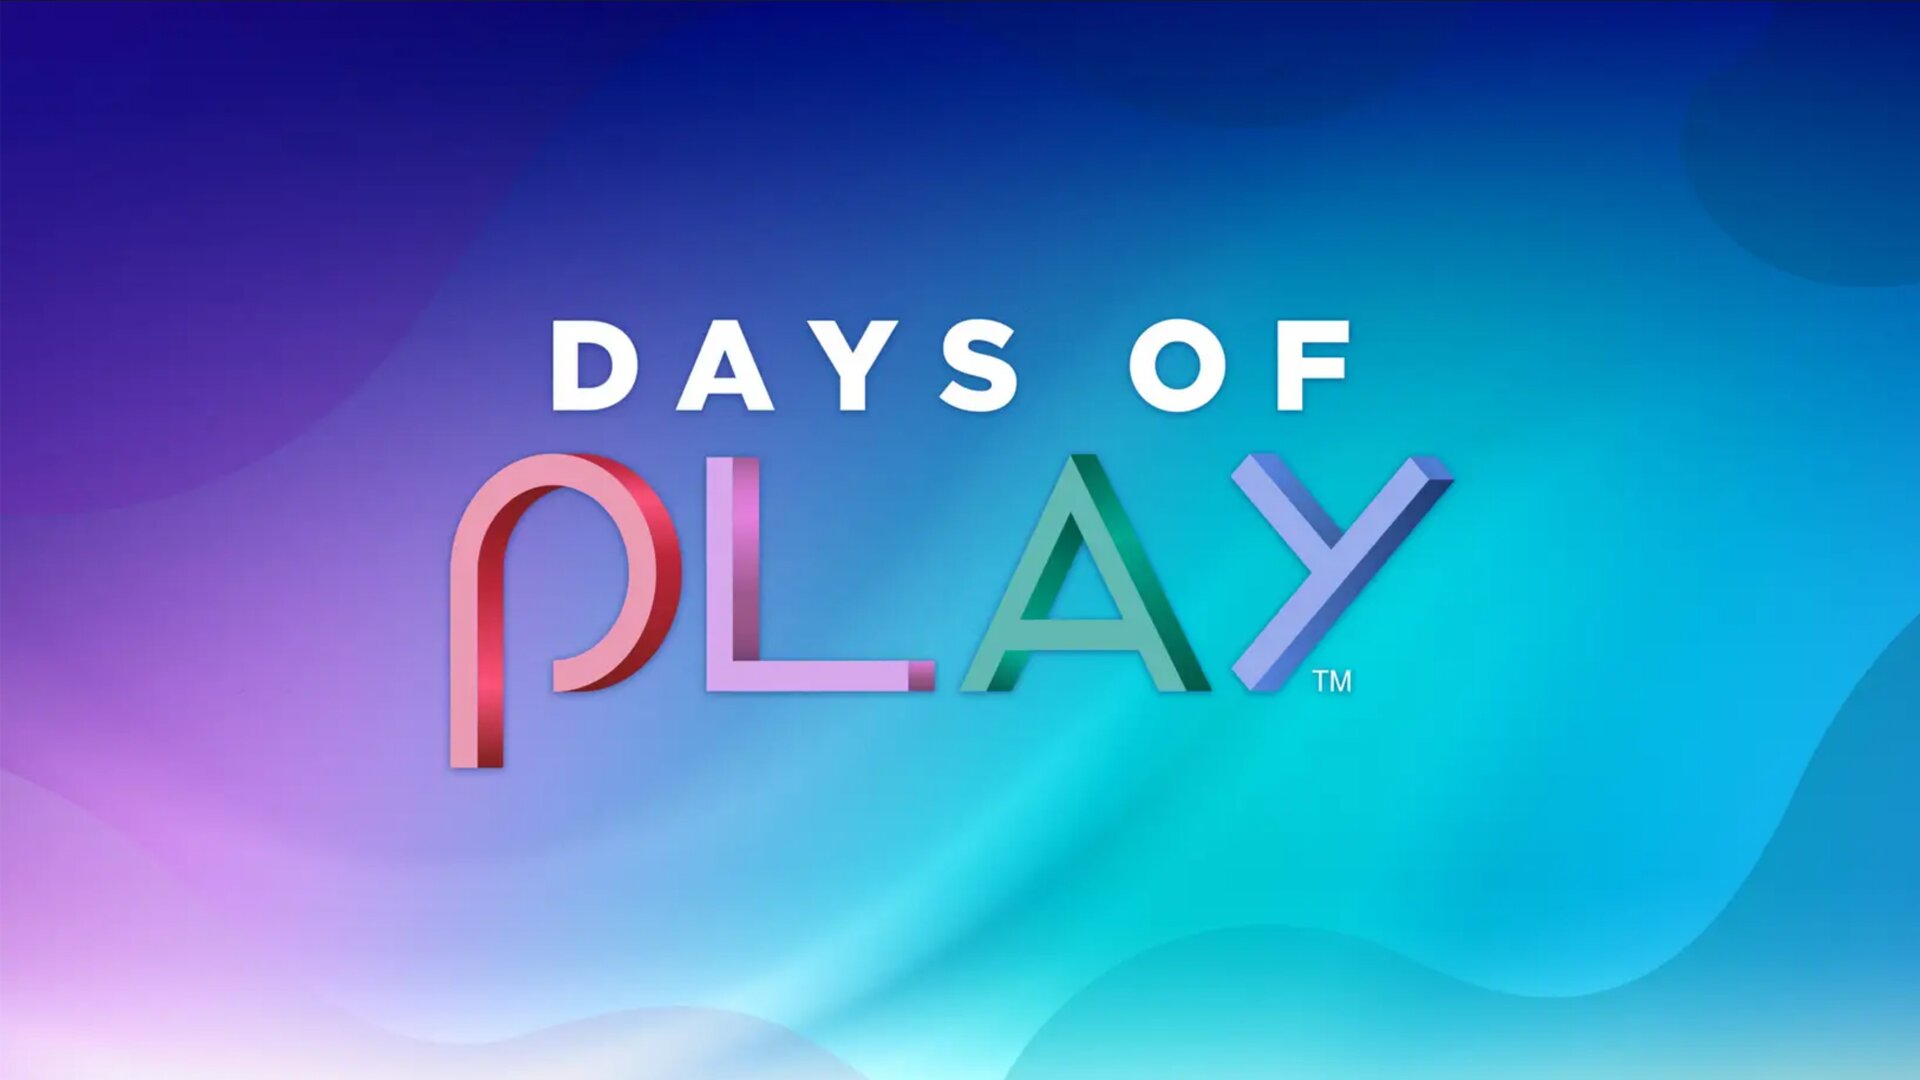 Days of Play jsou tady, kupte PS5 nebo největší herní pecky s obrovskou slevou